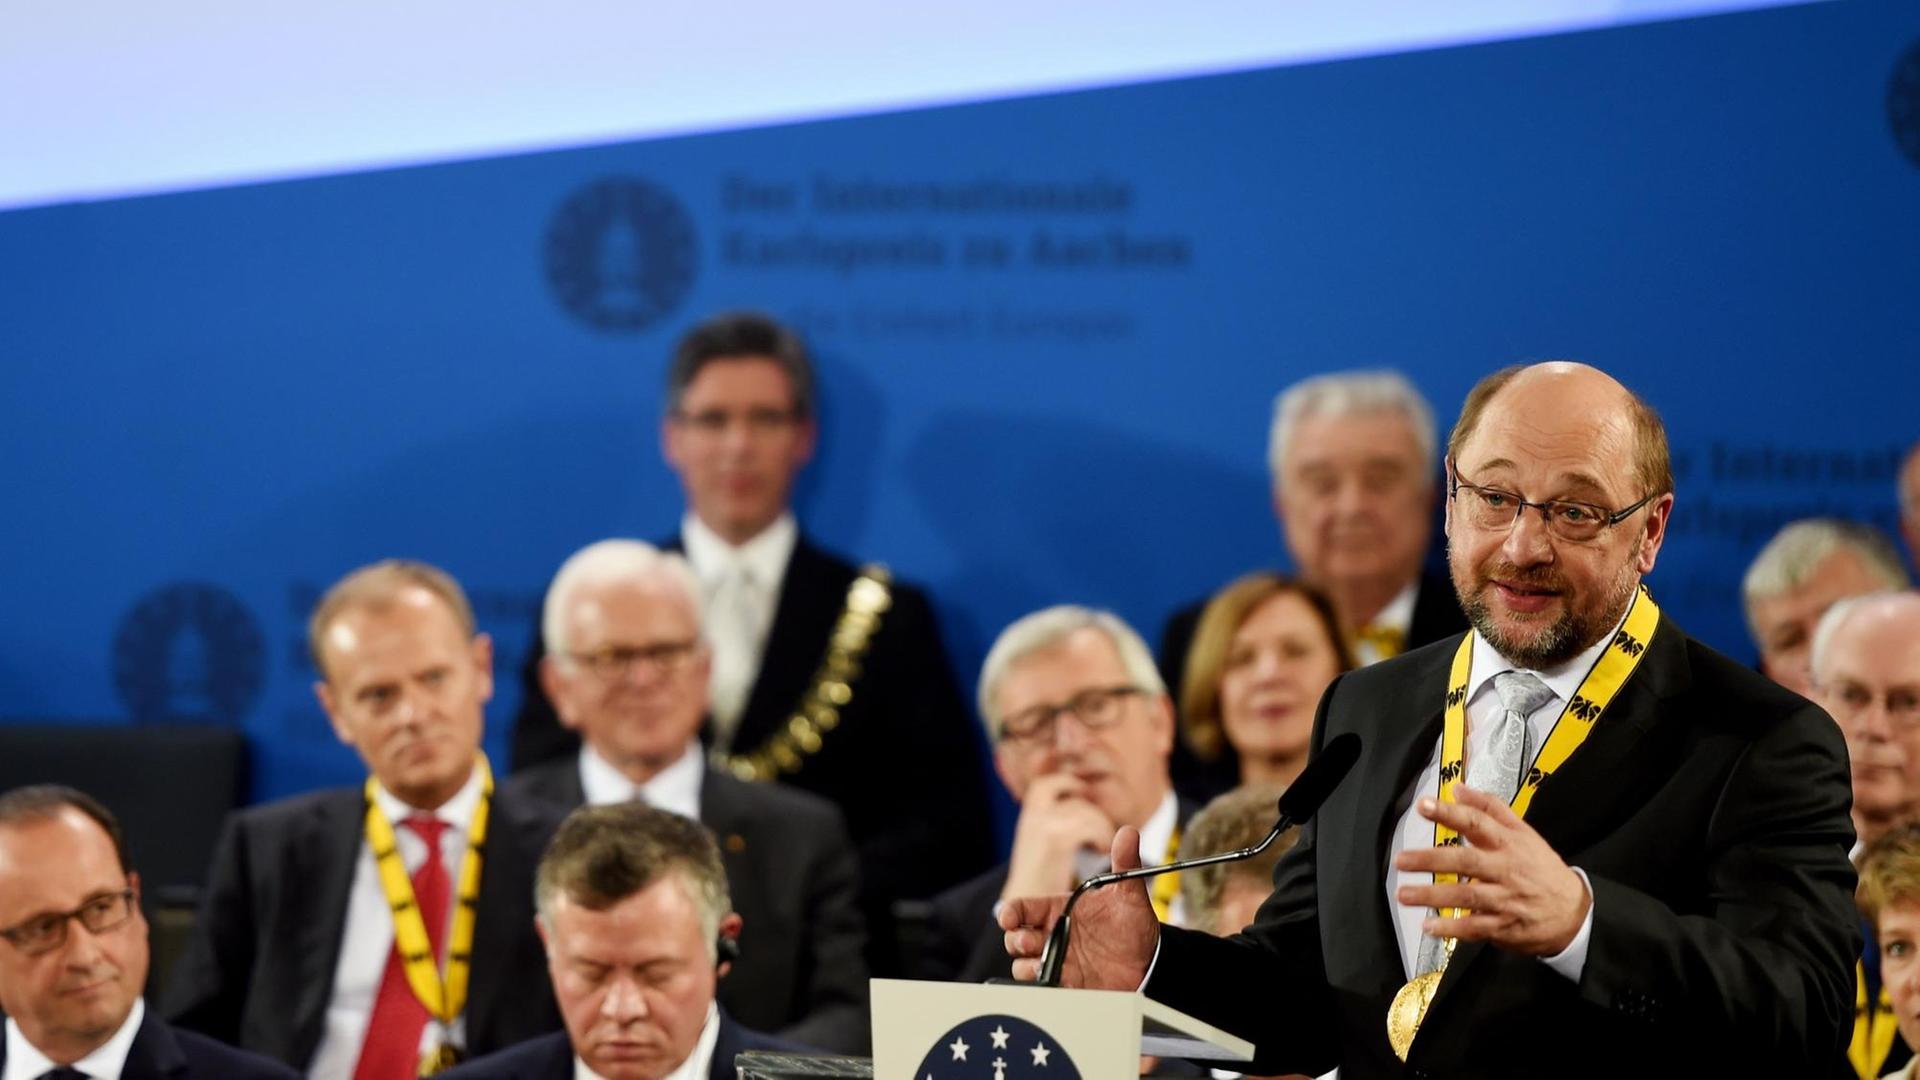 EU-Parlamentspräsident Martin Schulz (SPD) während seiner Dankesrede, nachdem er den Internationalen Karlspreis zu Aachen erhalten hat.